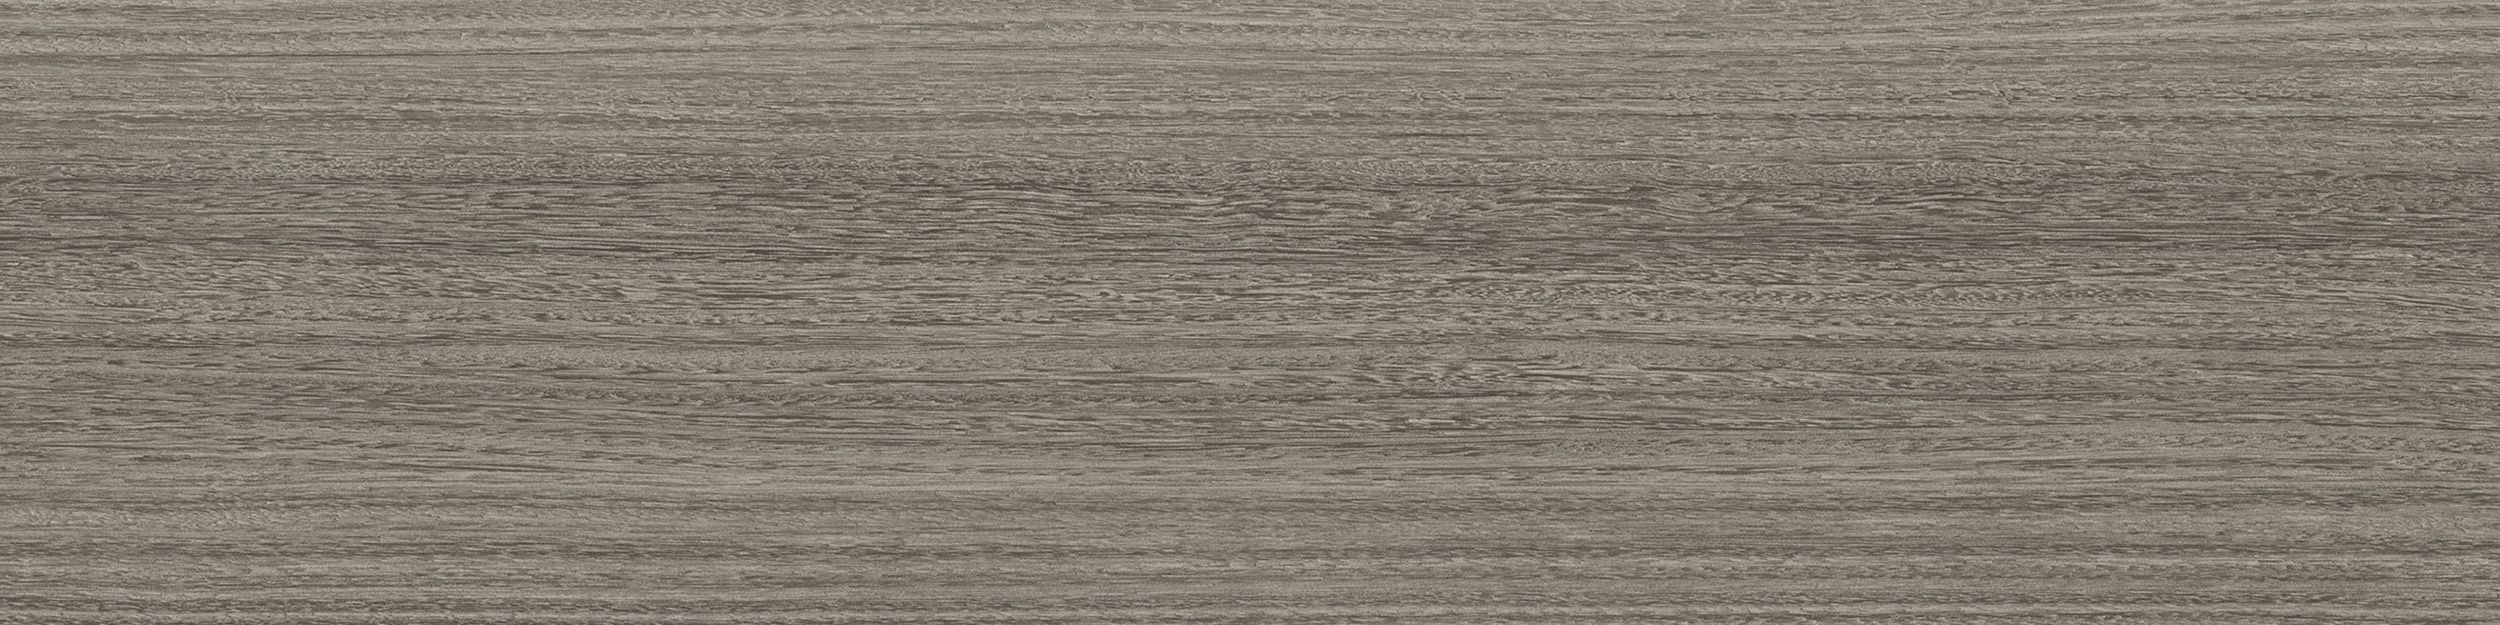 Textured Woodgrains LVT In Greywood imagen número 1